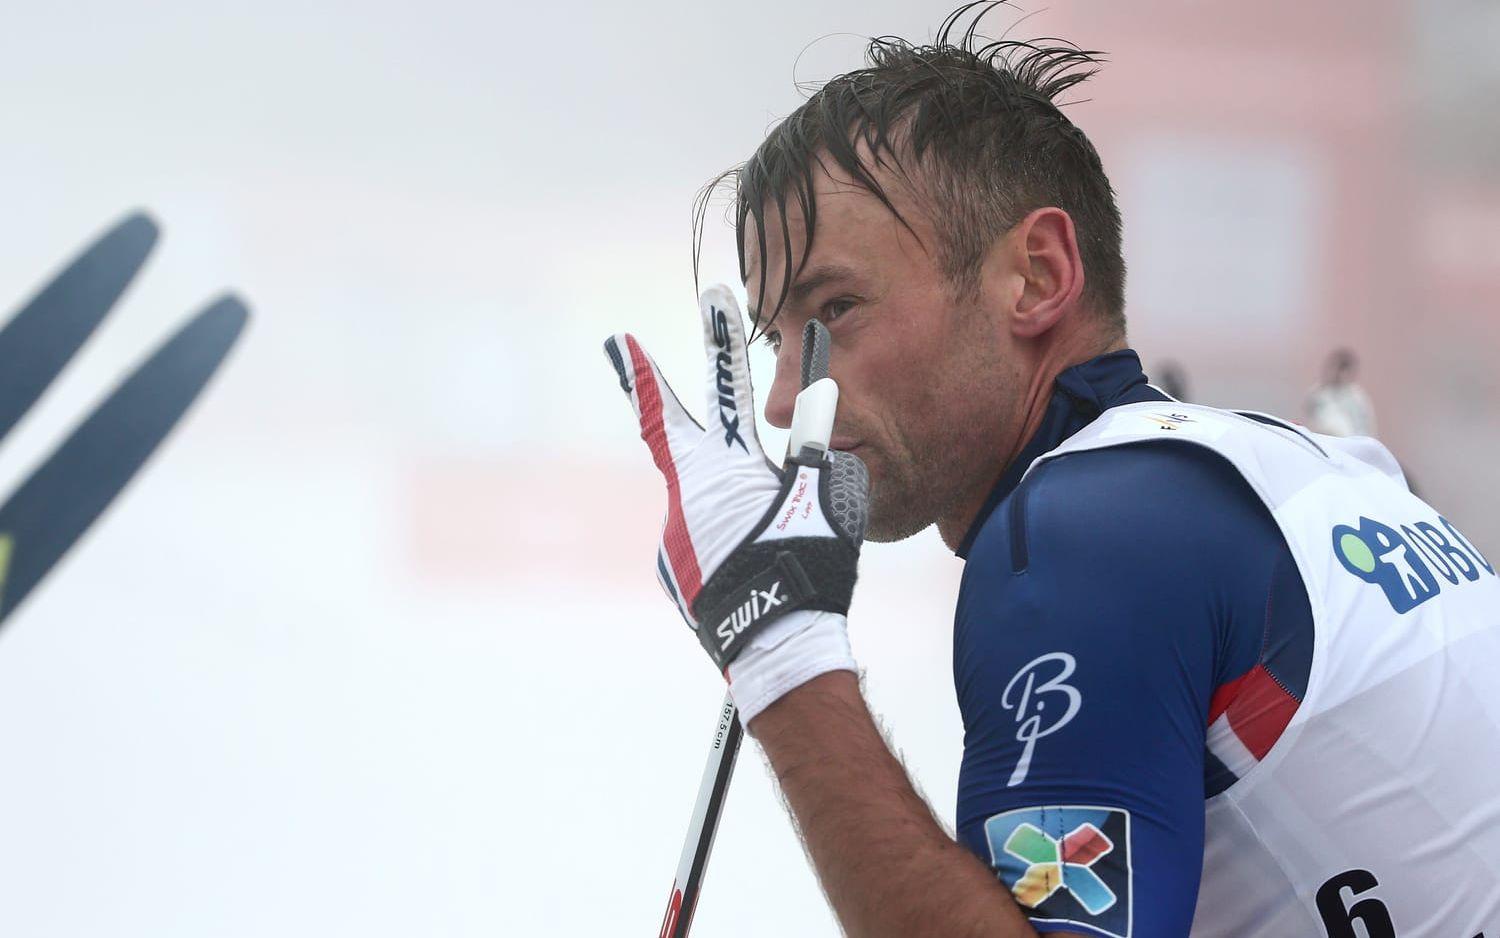 "Han har frikort till Tour de Ski men inte till VM och de andra distanserna". Bild: Bildbyrån